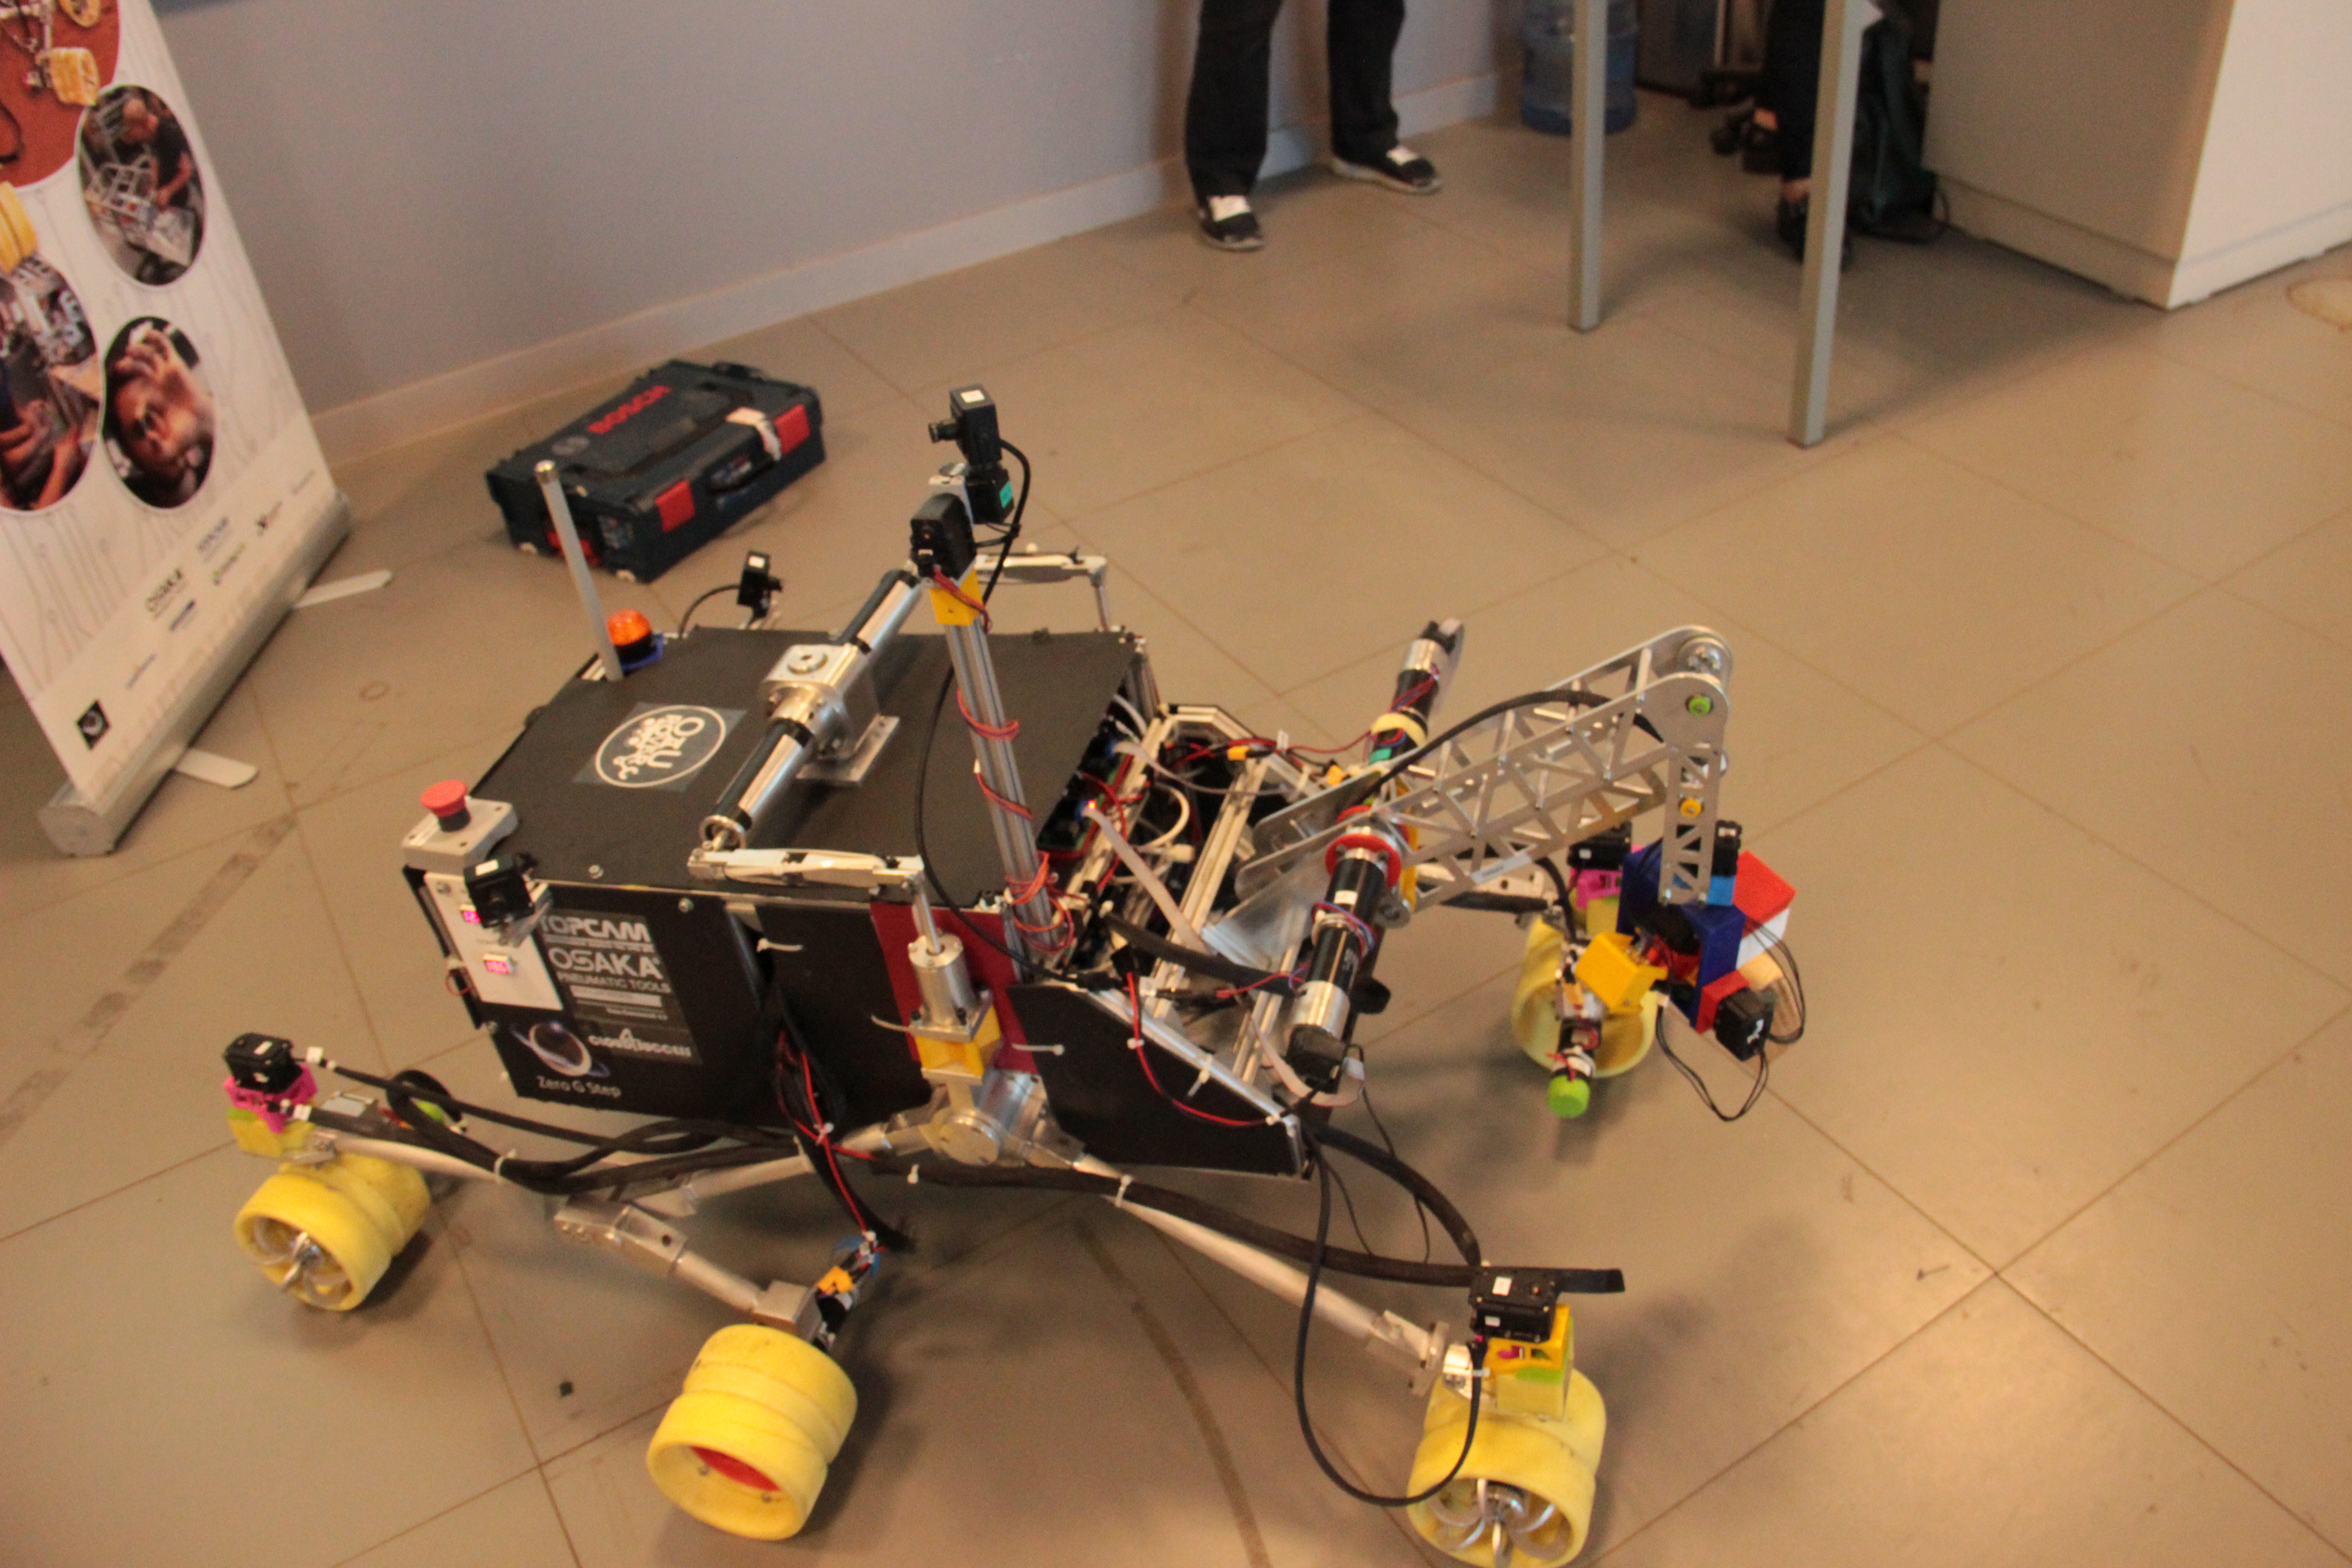 Özyeğin Üniversitesi öğrencilerinin tasarladığı mars robotu ikinci kez Türkiye’den katılan tek takım olarak Polonya’da yarışacak-1145